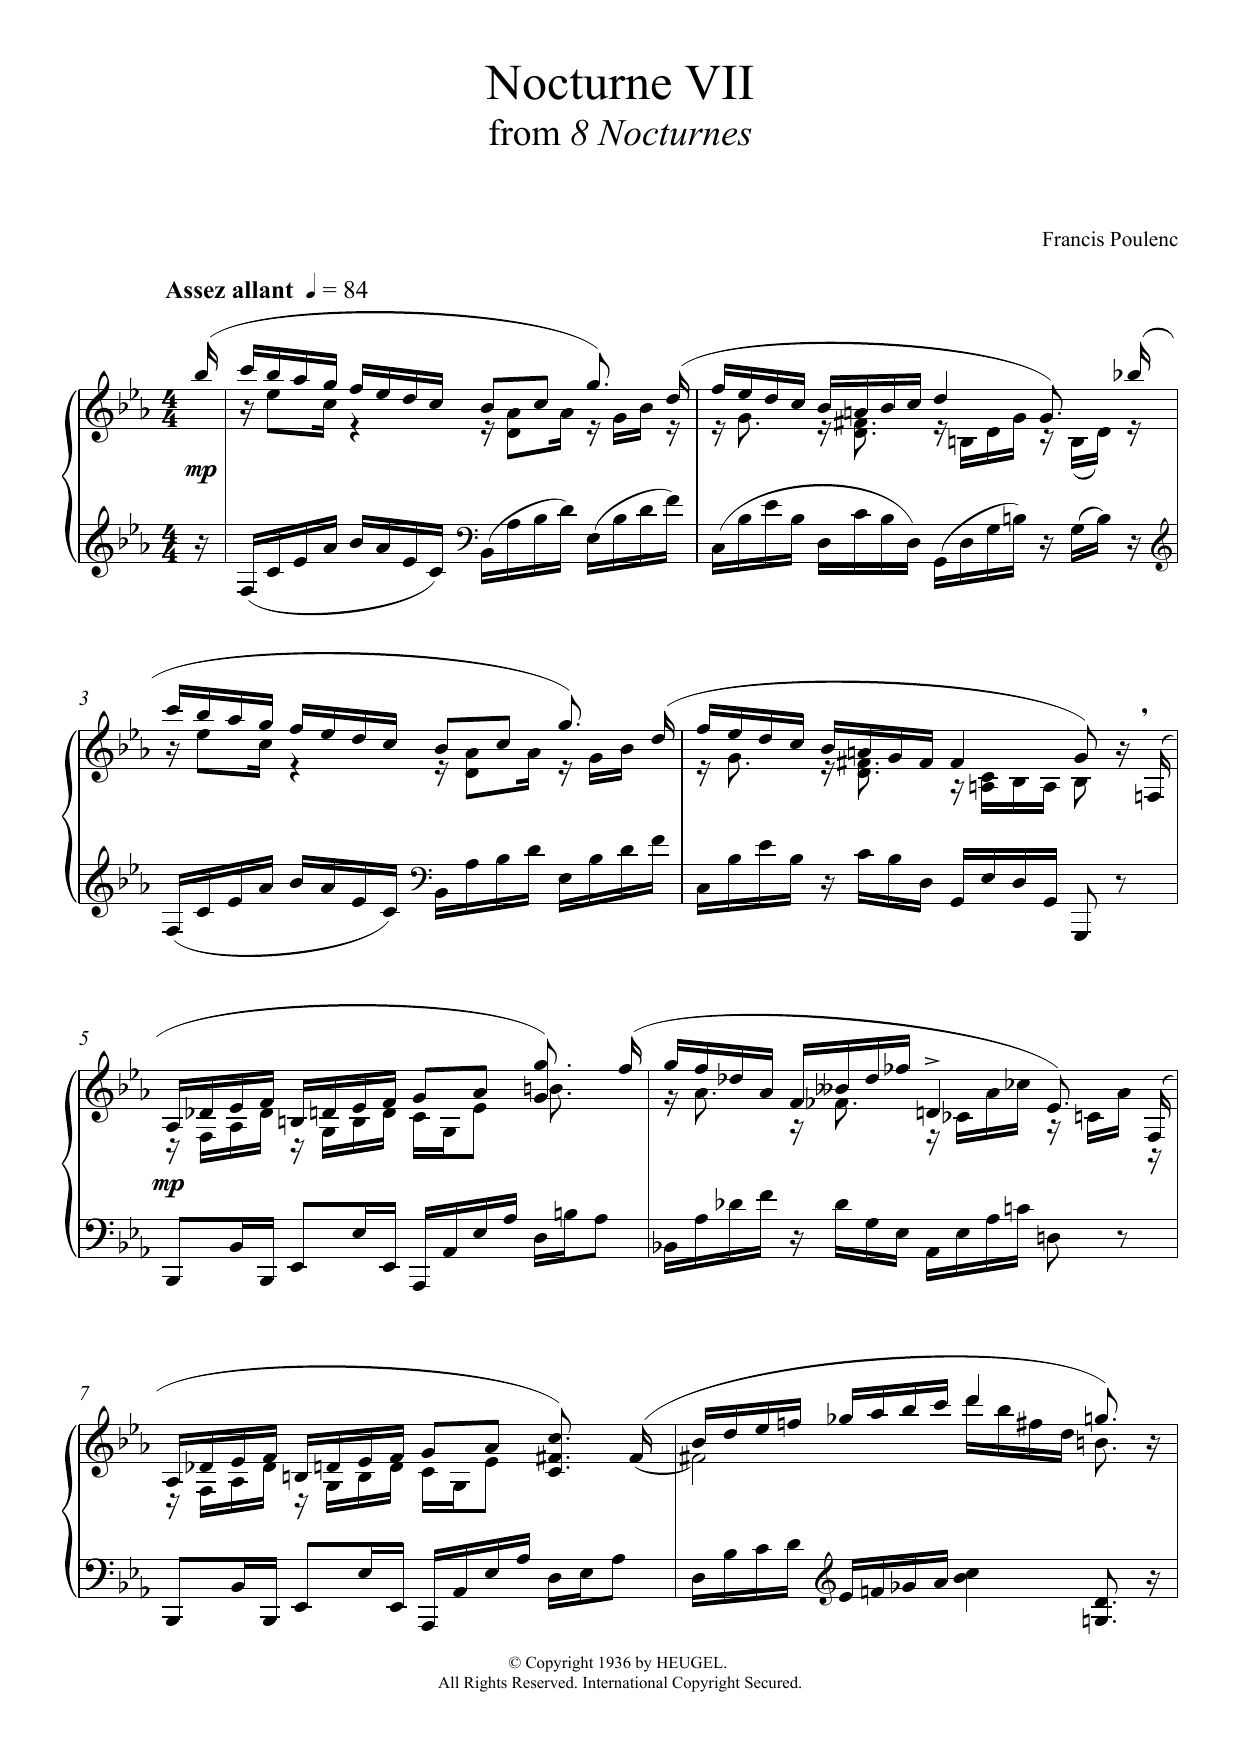 Download Francis Poulenc 8 Nocturnes - VII. (Assez Allant) Sheet Music